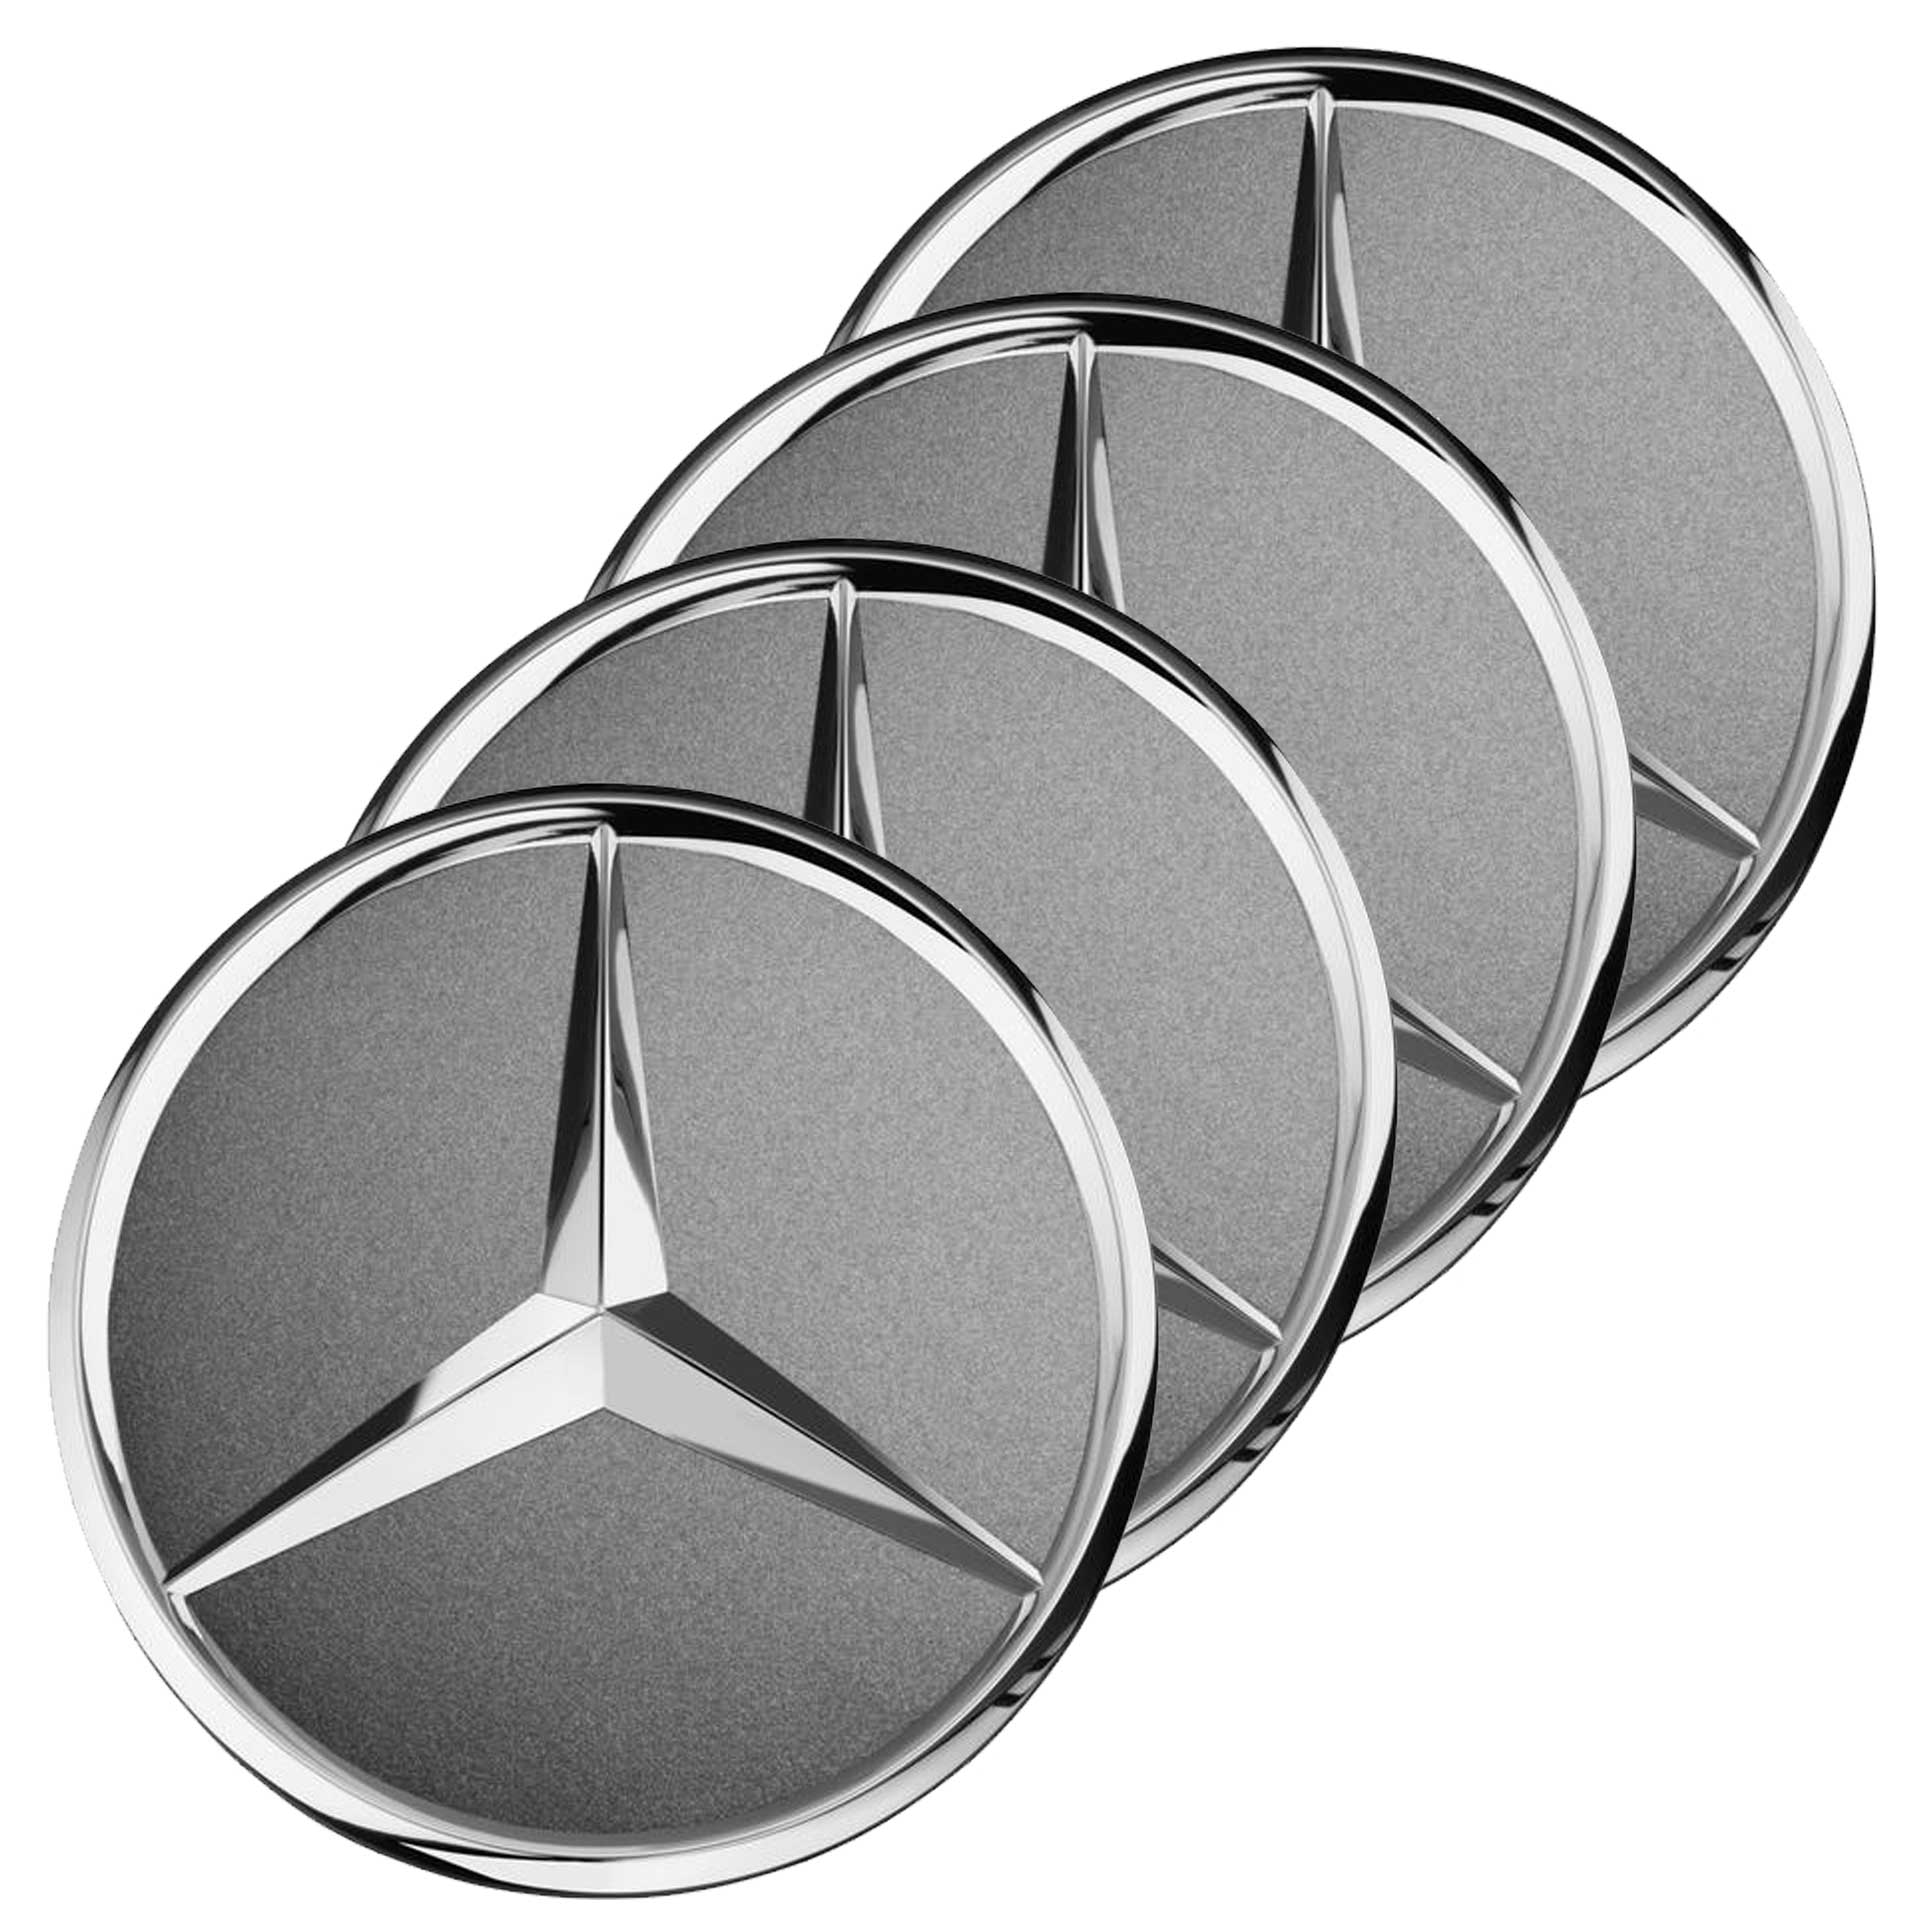 Mercedes-Benz Radnabenabdeckung Stern grau Himalaya 4-teiliger Satz